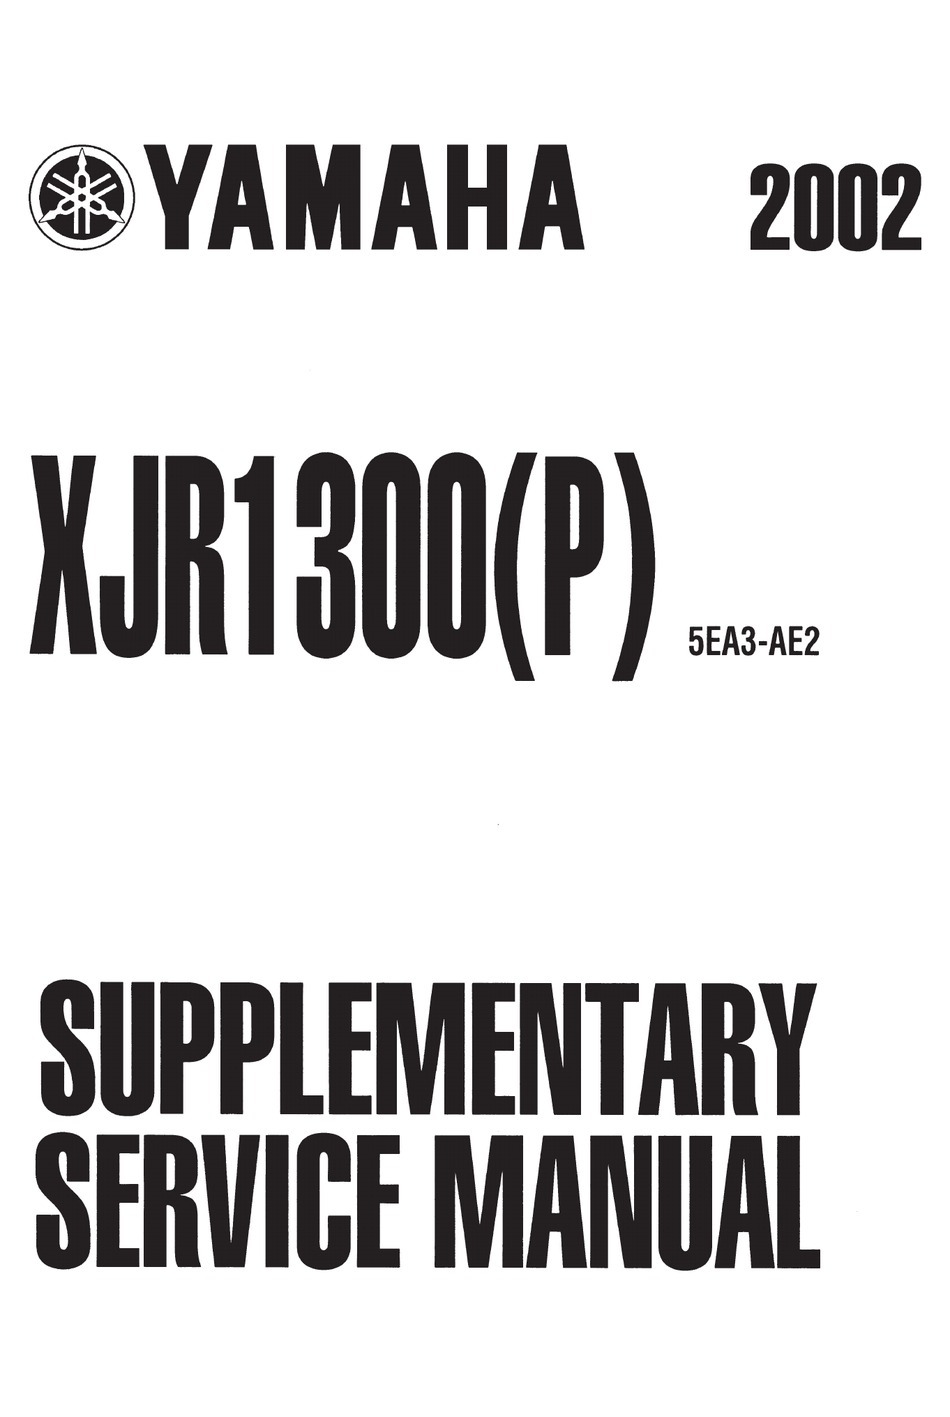 Yamaha XJR 1200 1300 Haynes Manual Repair Manual Workshop Manual  1995-2006